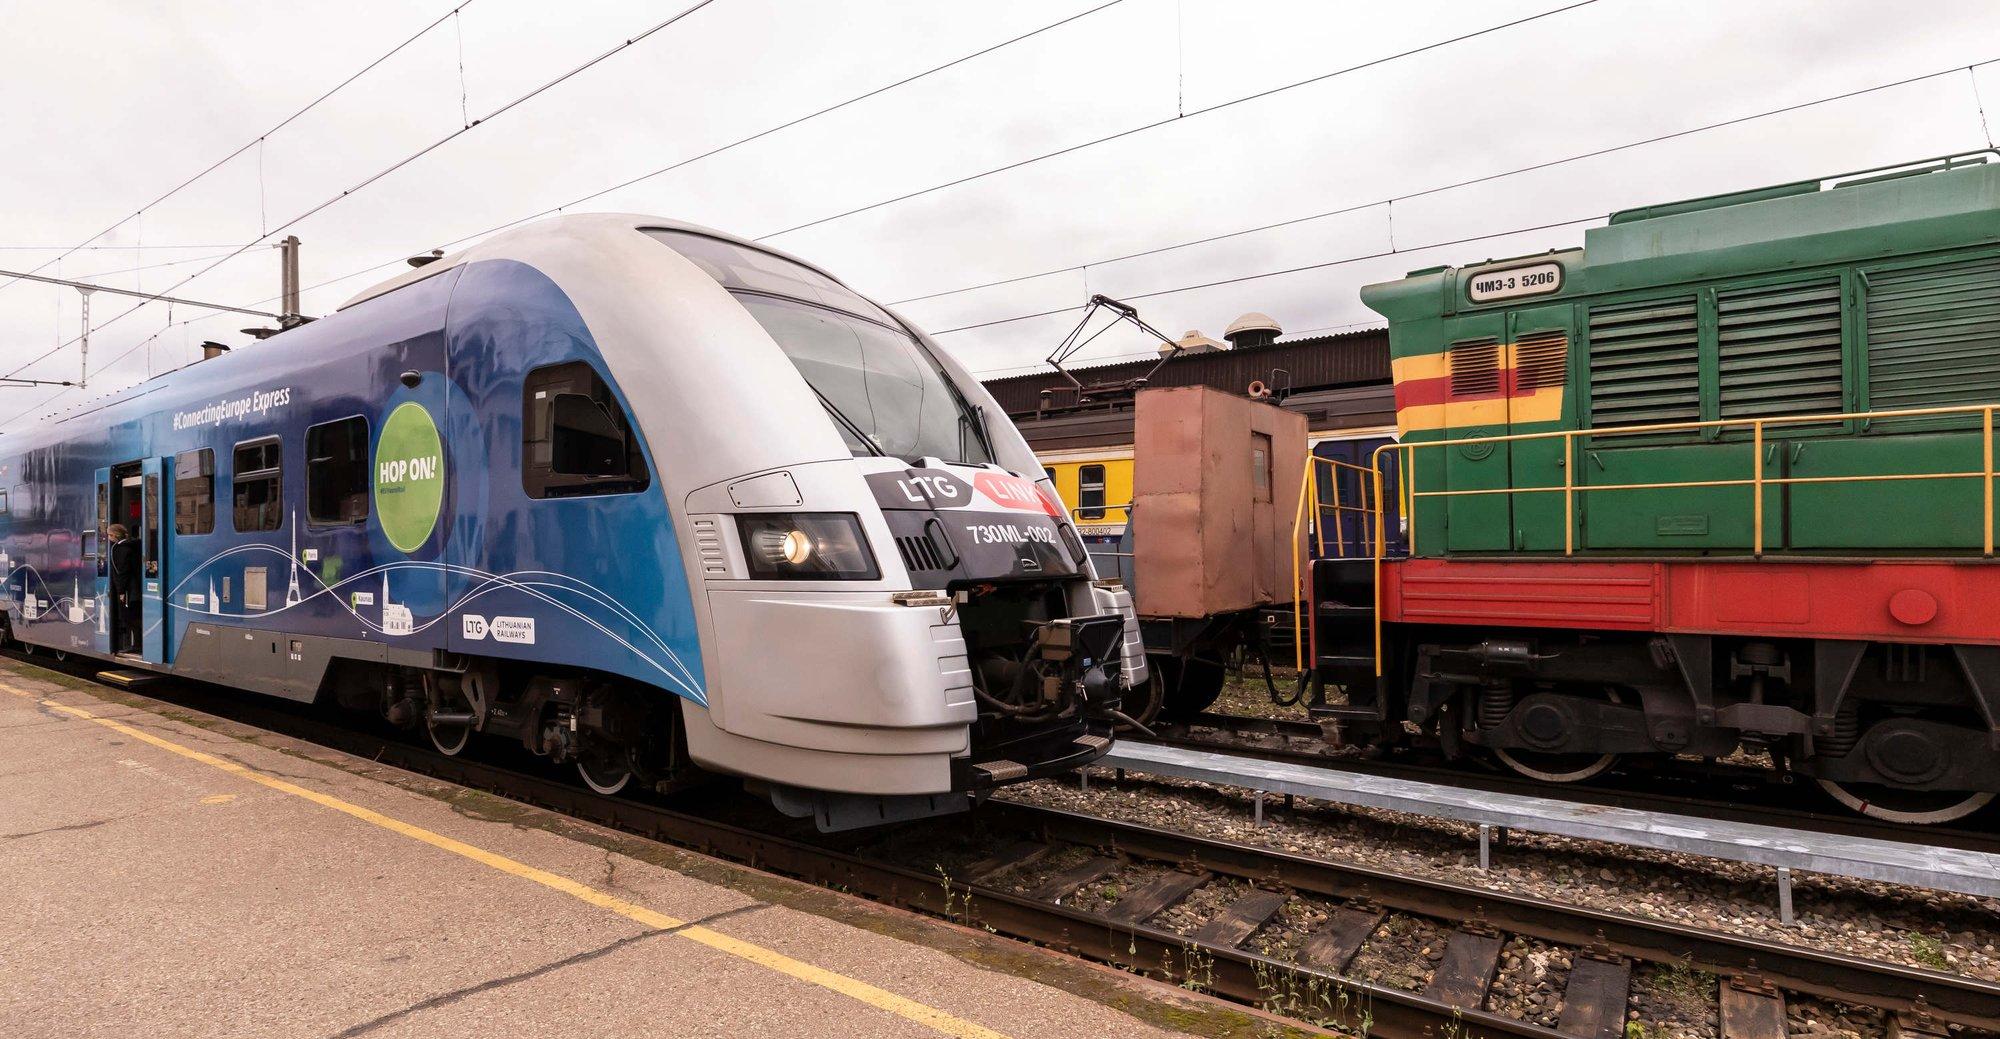 Dе facto: Rail Baltica пока может отказаться от скоростного поезда через Ригу и нового ж/д моста